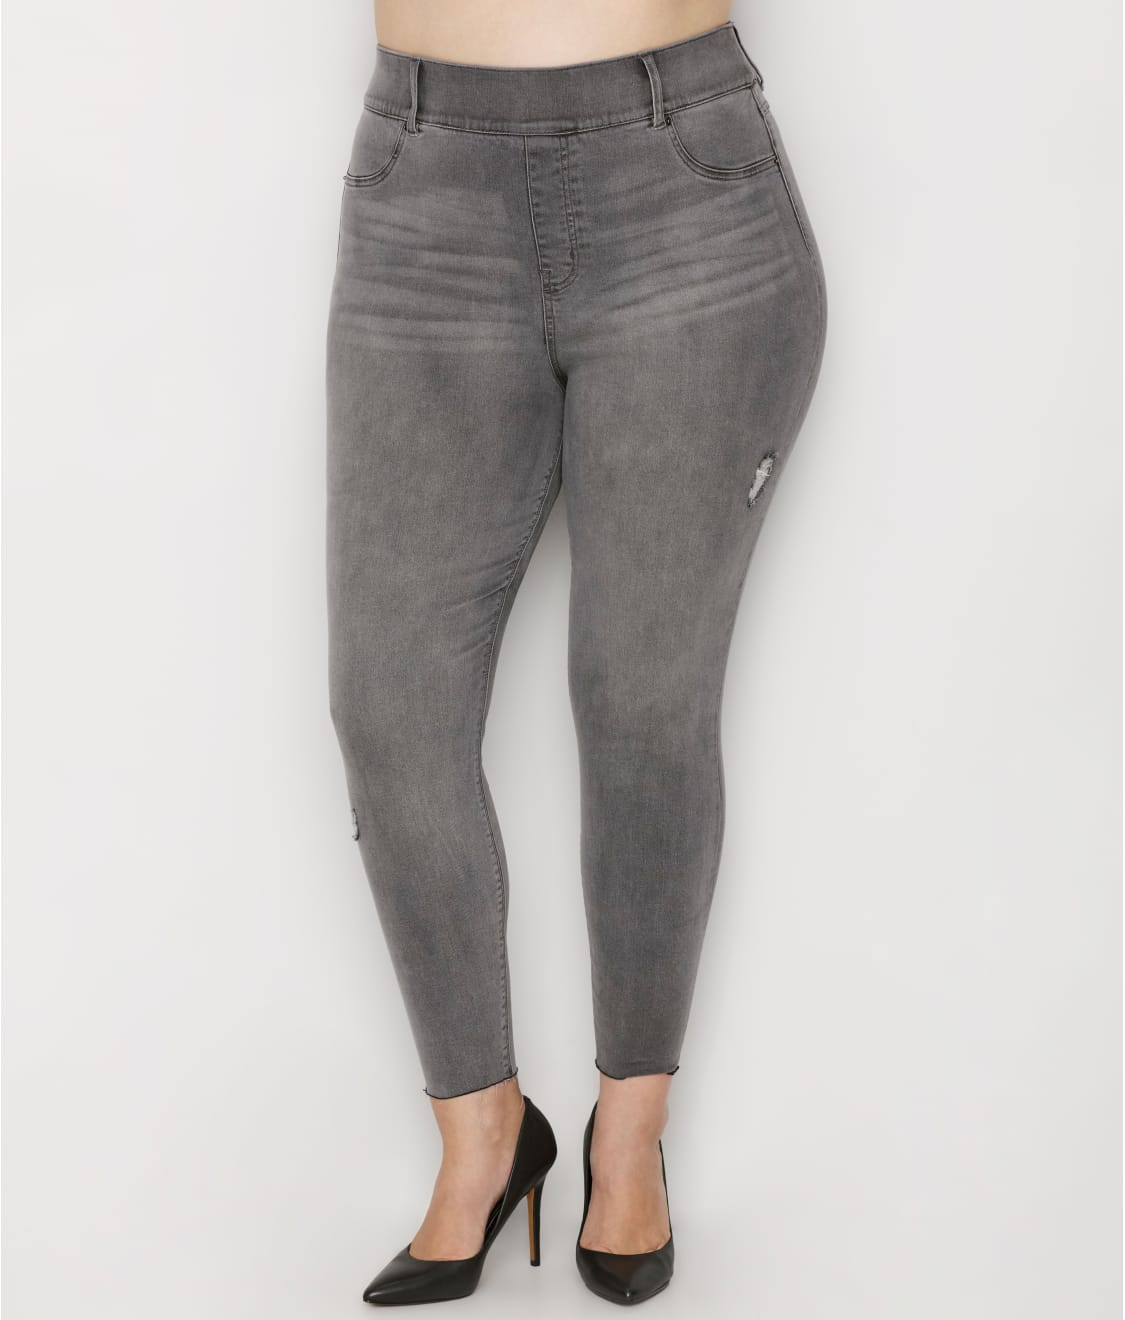 Spanx Distressed Skinny Jeans Vintage Grey